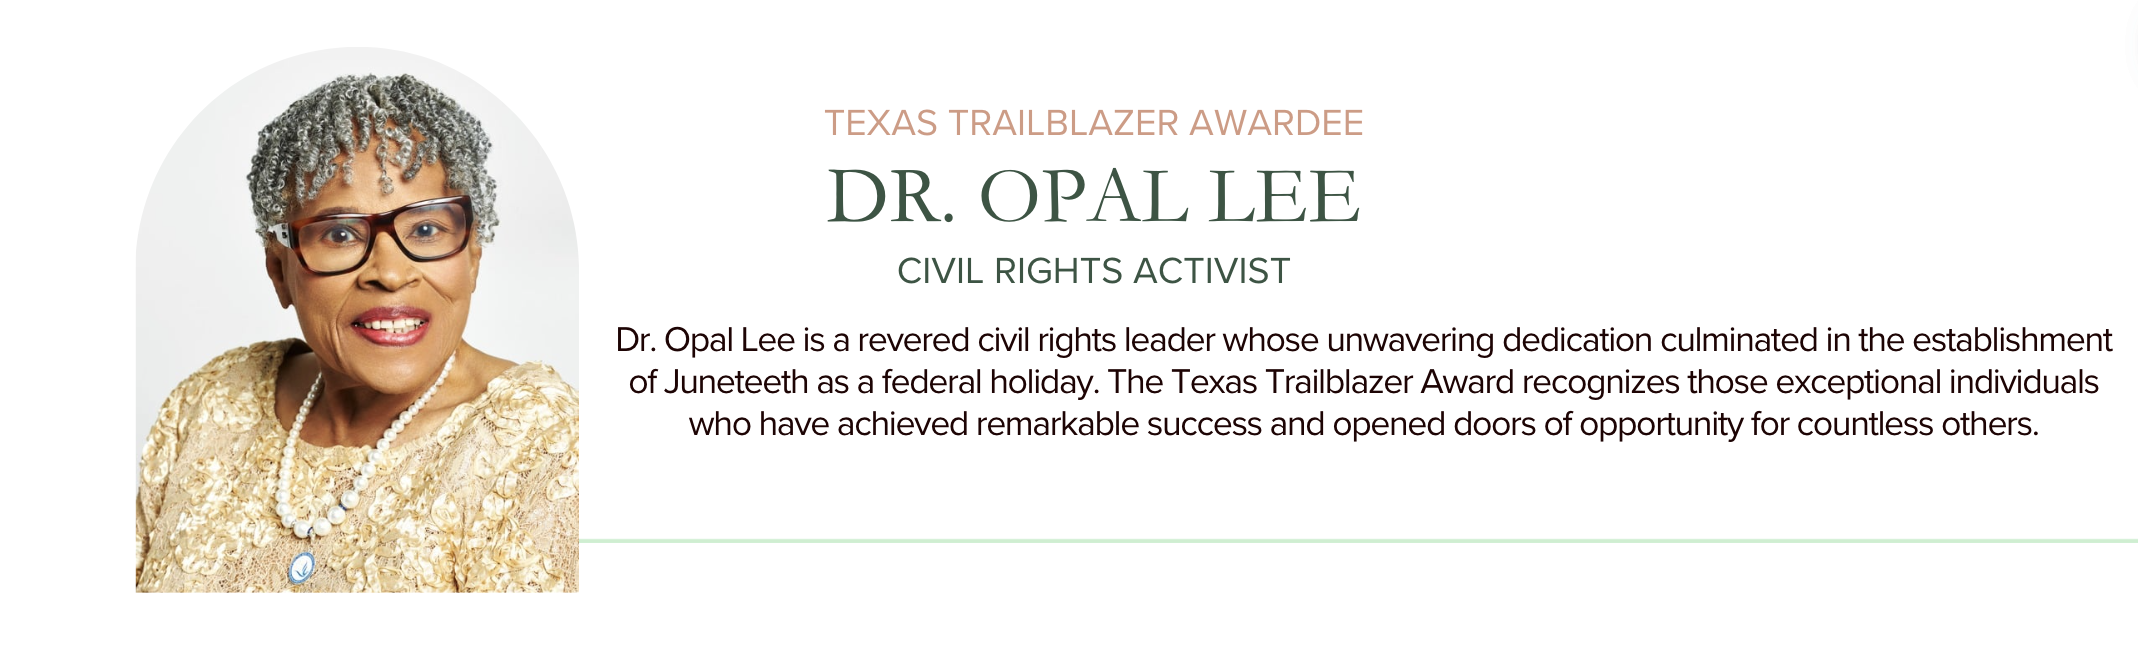 Dr. Opal Lee